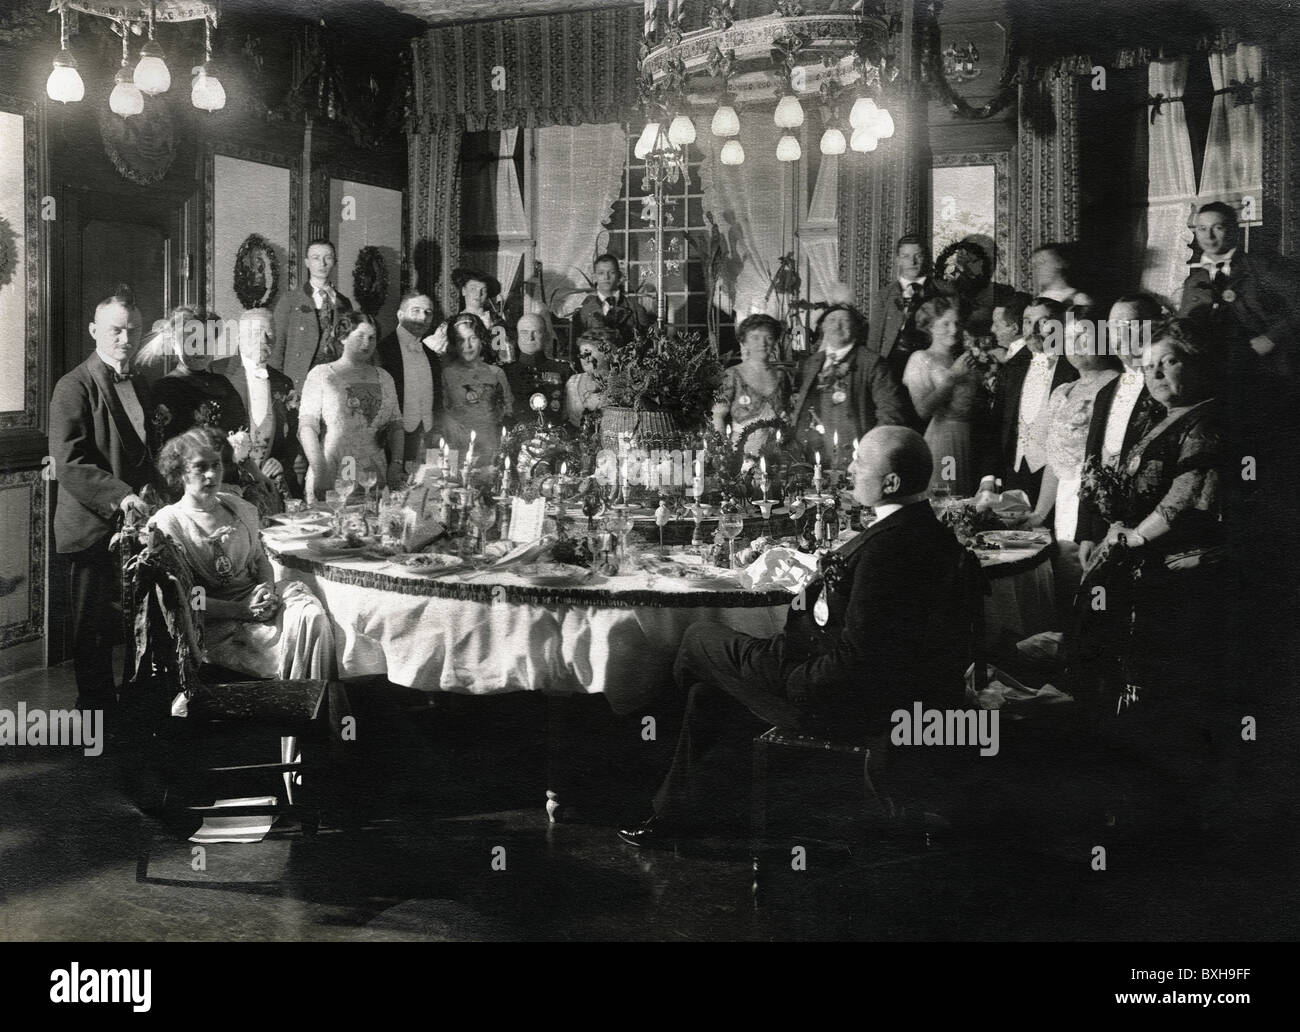 Festlichkeiten, Bälle und Gesellschaft, Bankett, Bankett, Oberschicht, München, Deutschland, um 1912, Zusatzrechte-Clearenzen-nicht vorhanden Stockfoto